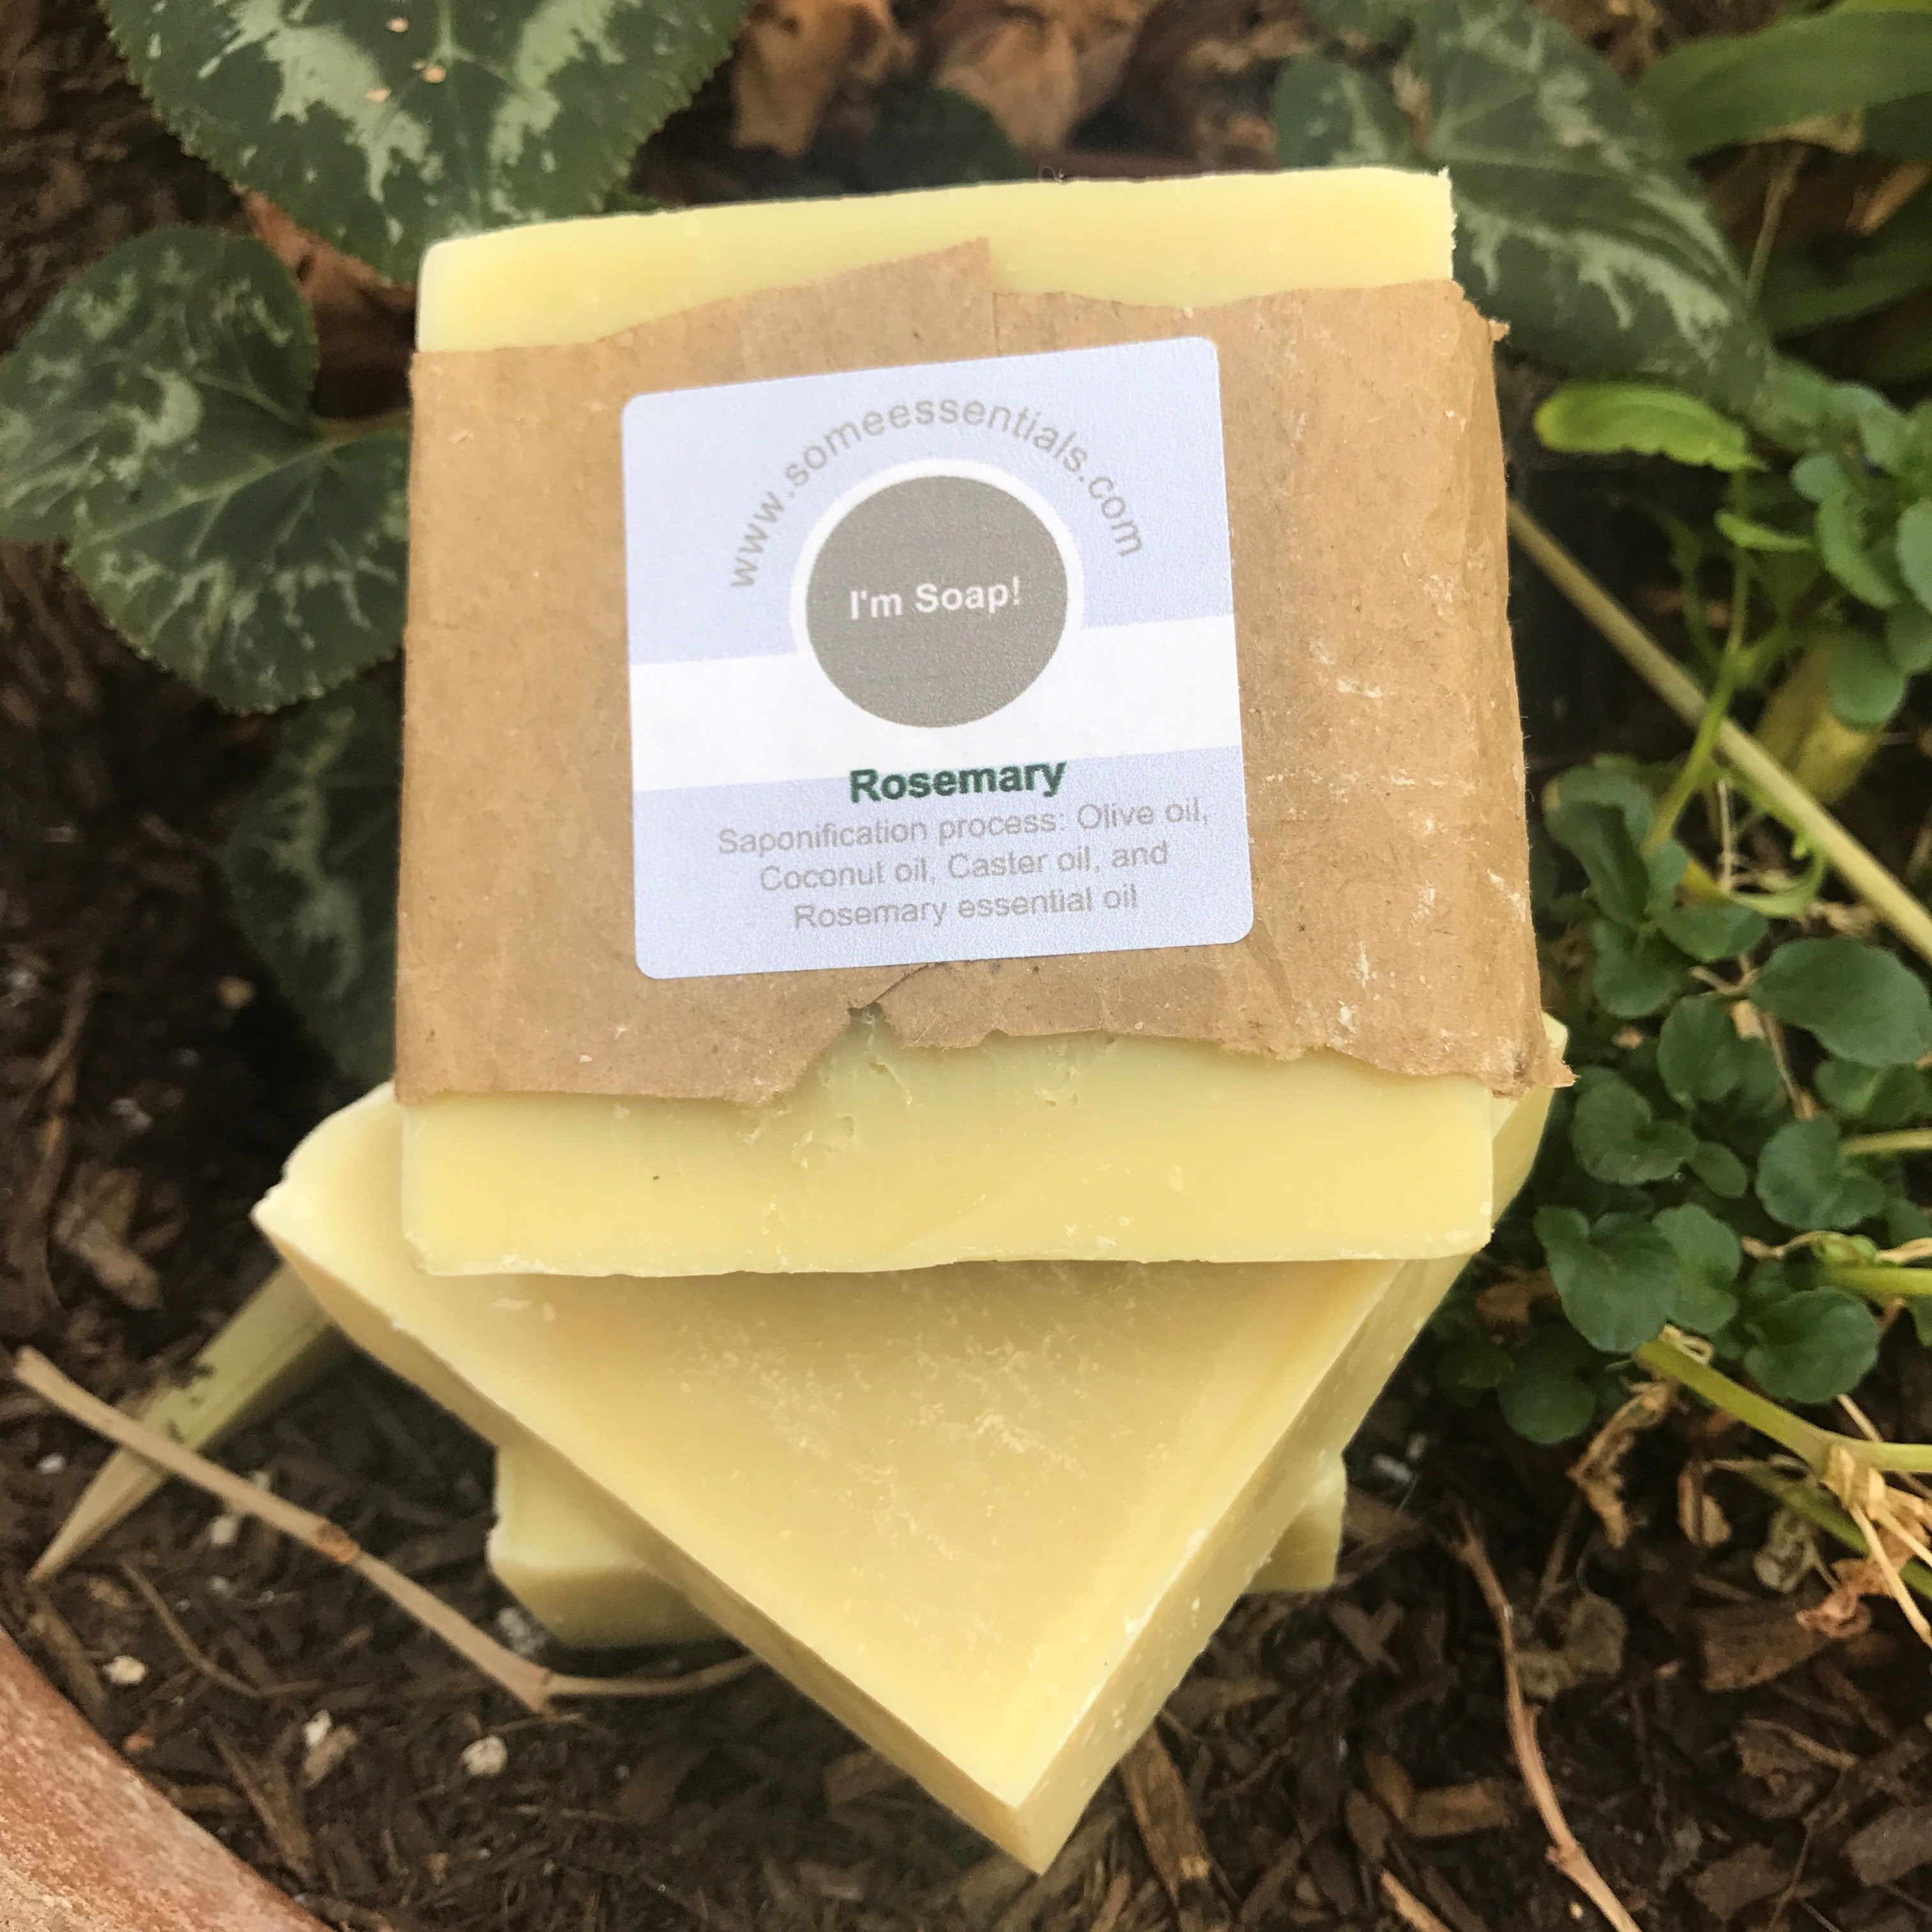 All natural soap | Some Essentials LLC